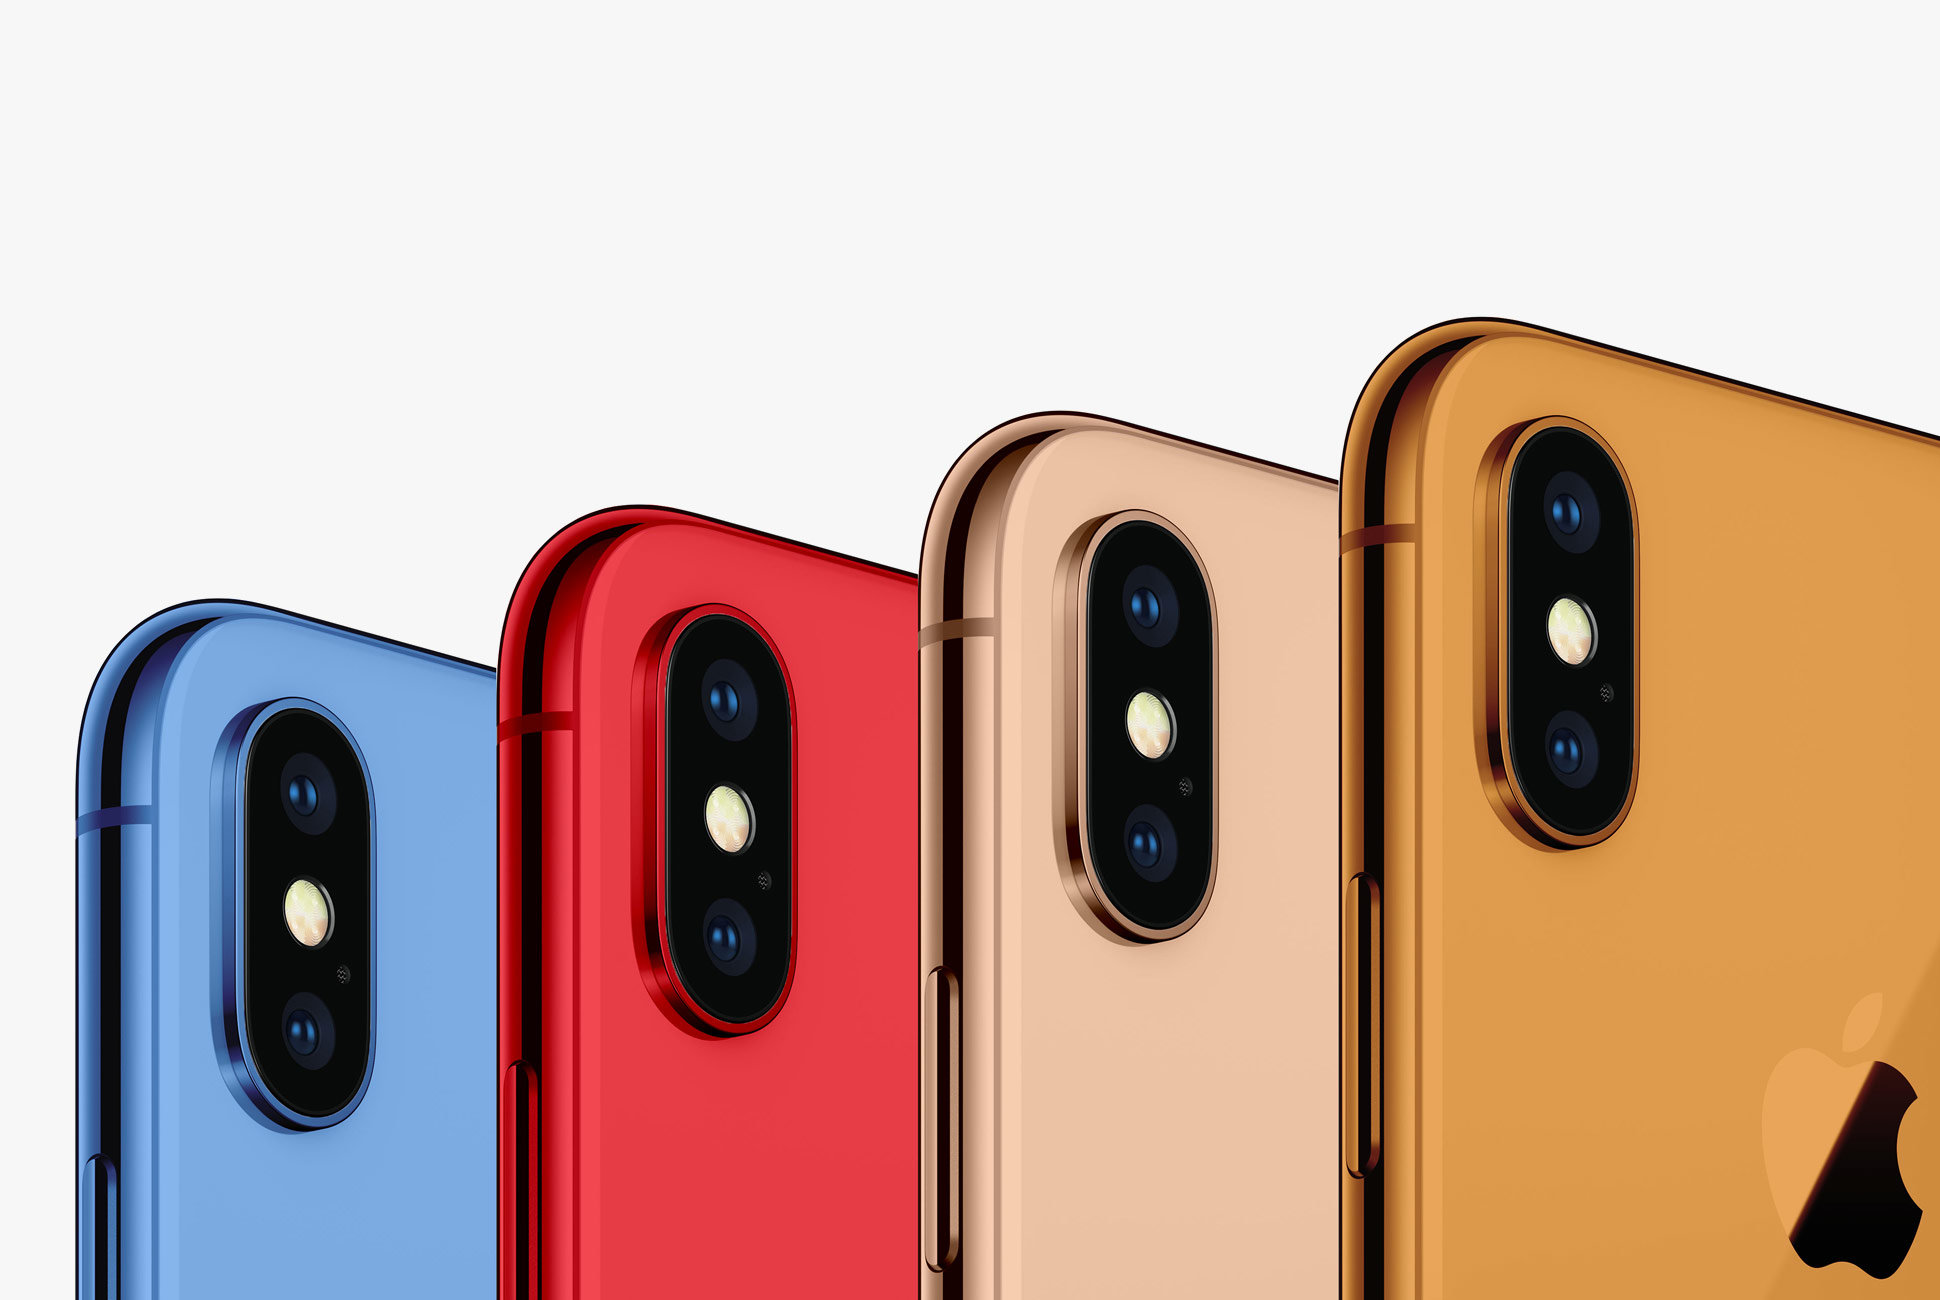 Ενδεχομένως η Apple να λανσάρει το επερχόμενο iPhone και σε μπλε, πορτοκαλί και κόκκινο